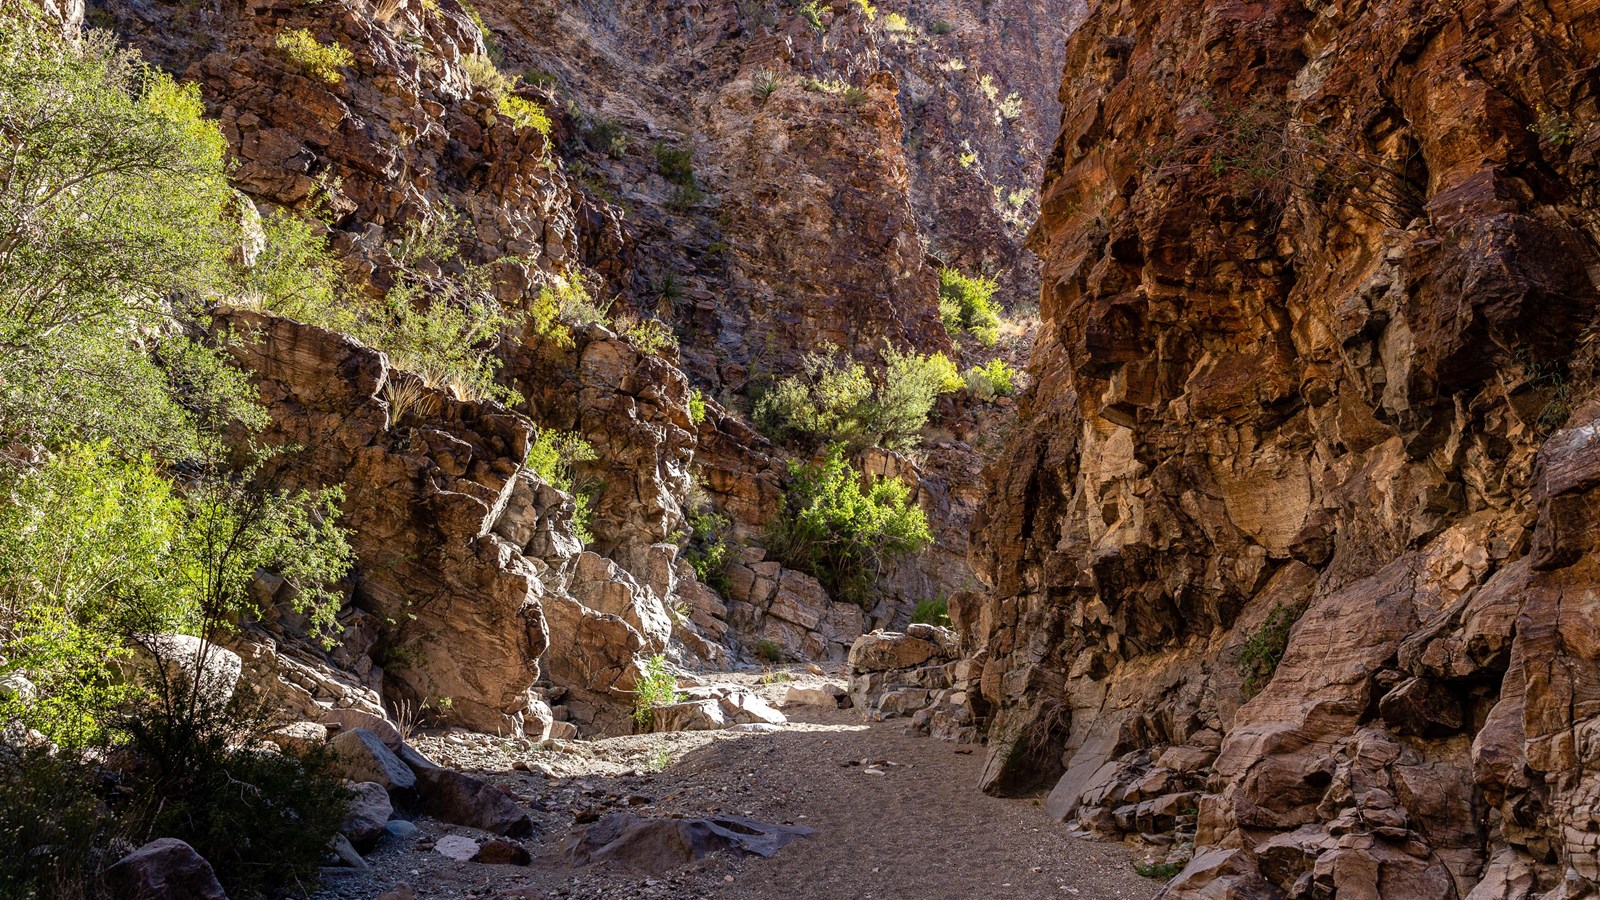 The trail follows a sandy wash through steep canyon walls.